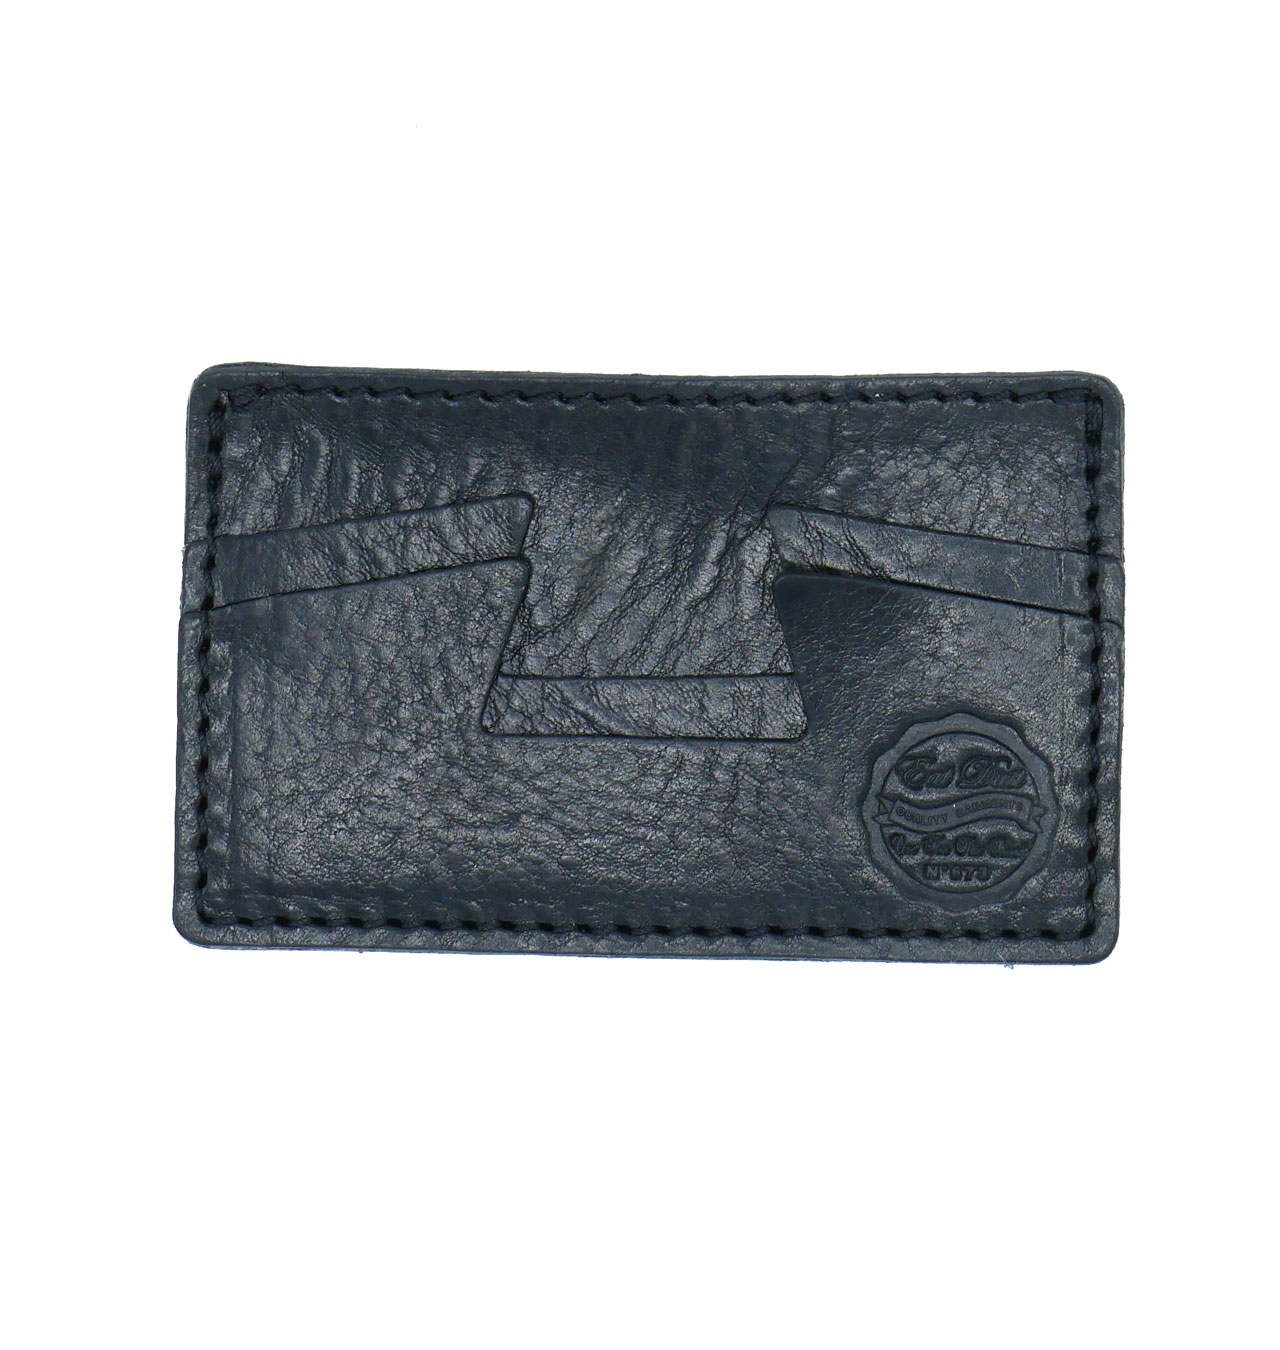 Eat Dust - Credit Card Holder Leather - Black